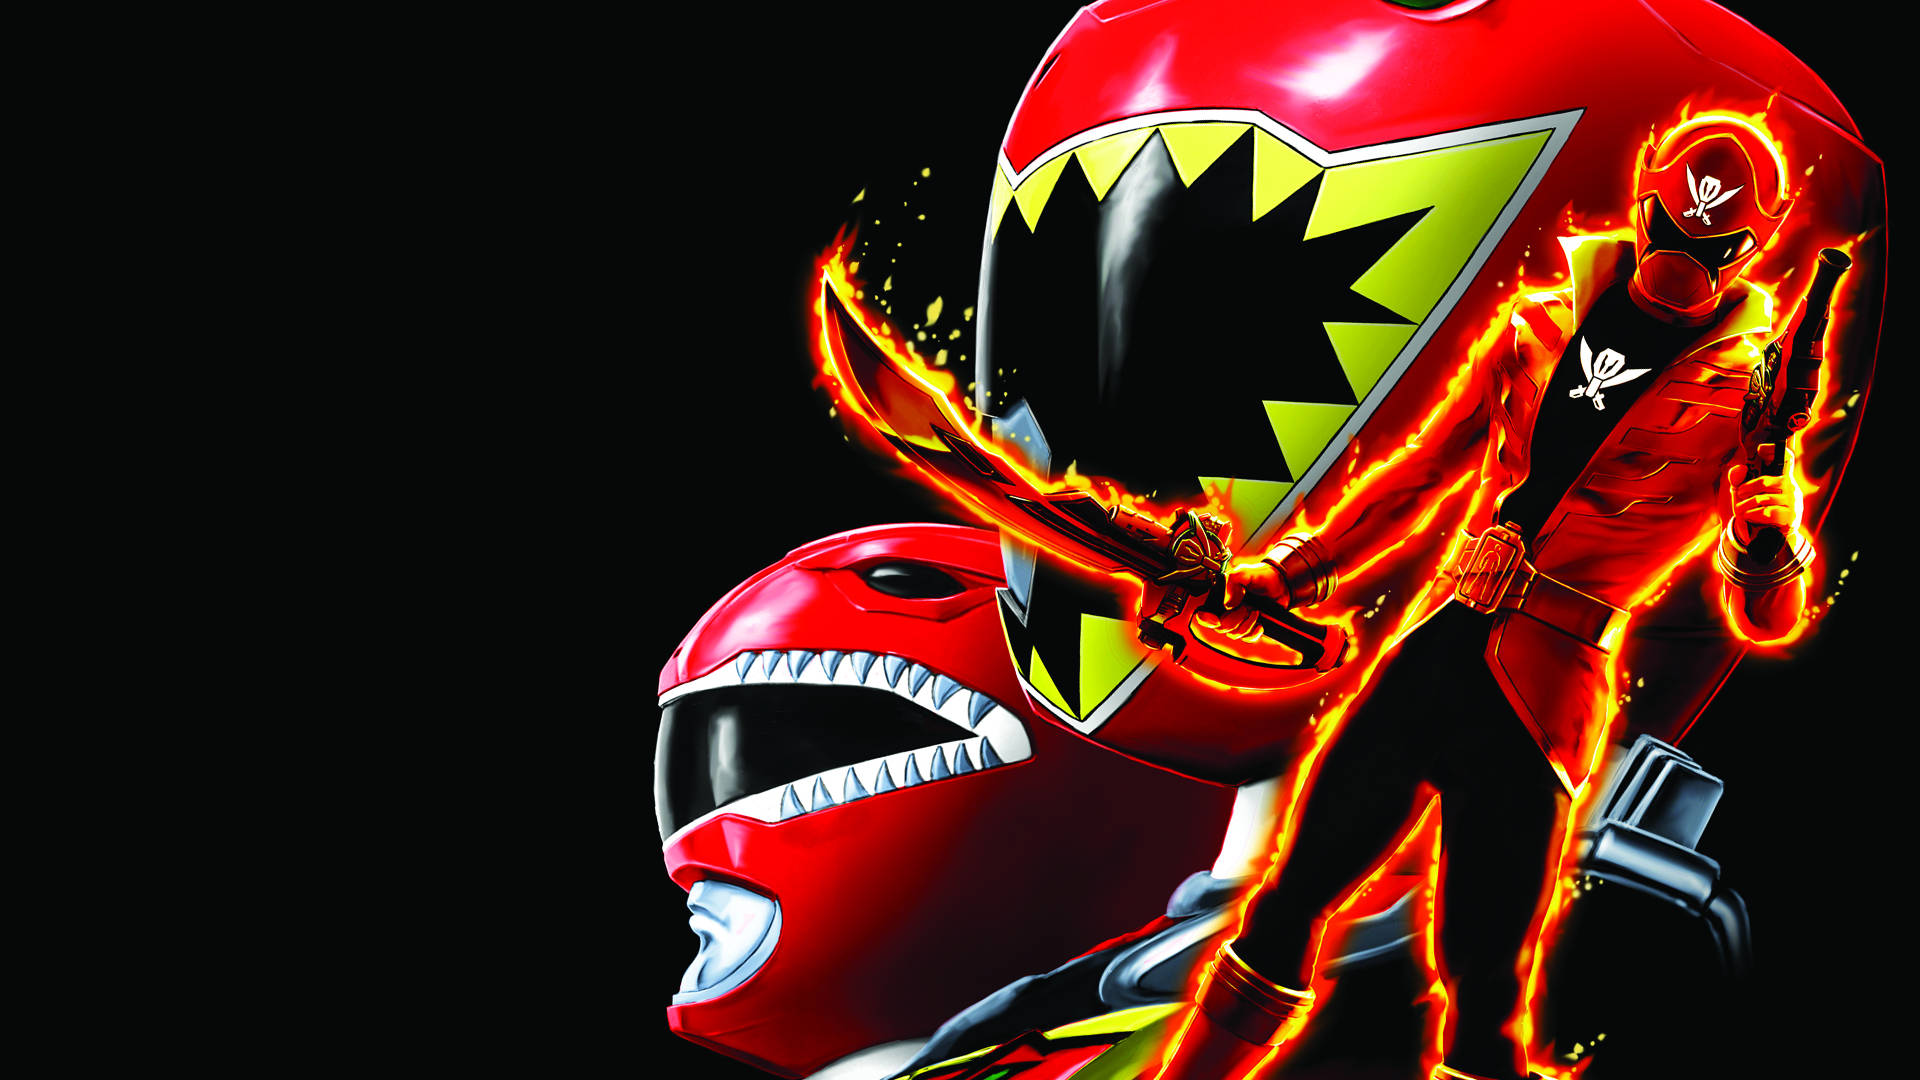 Caption: Red Super Megaforce Power Ranger Action Pose. Background